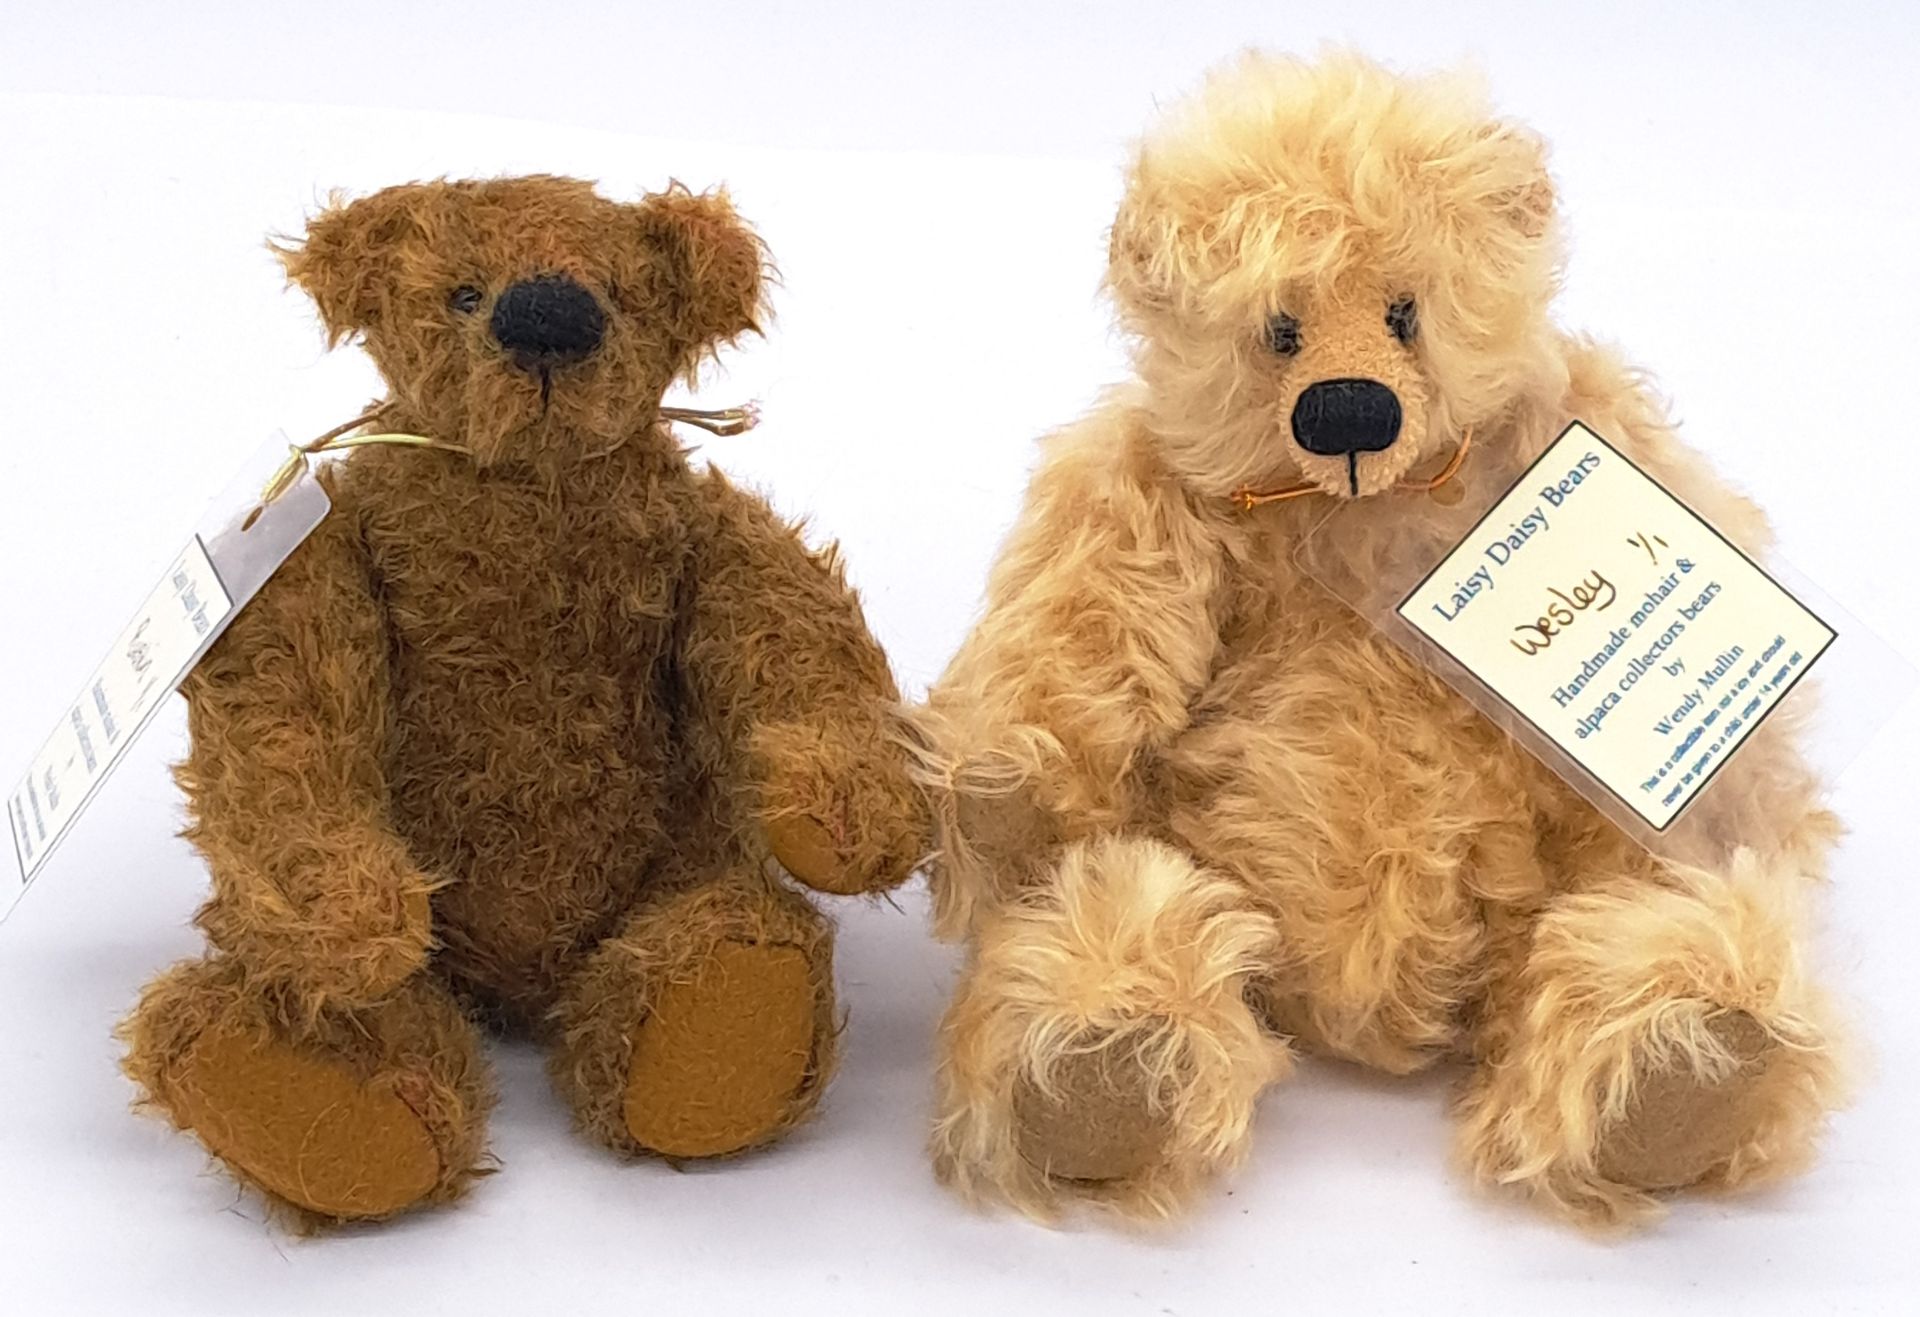 Laisy Daisy Bears pair of artist teddy bears